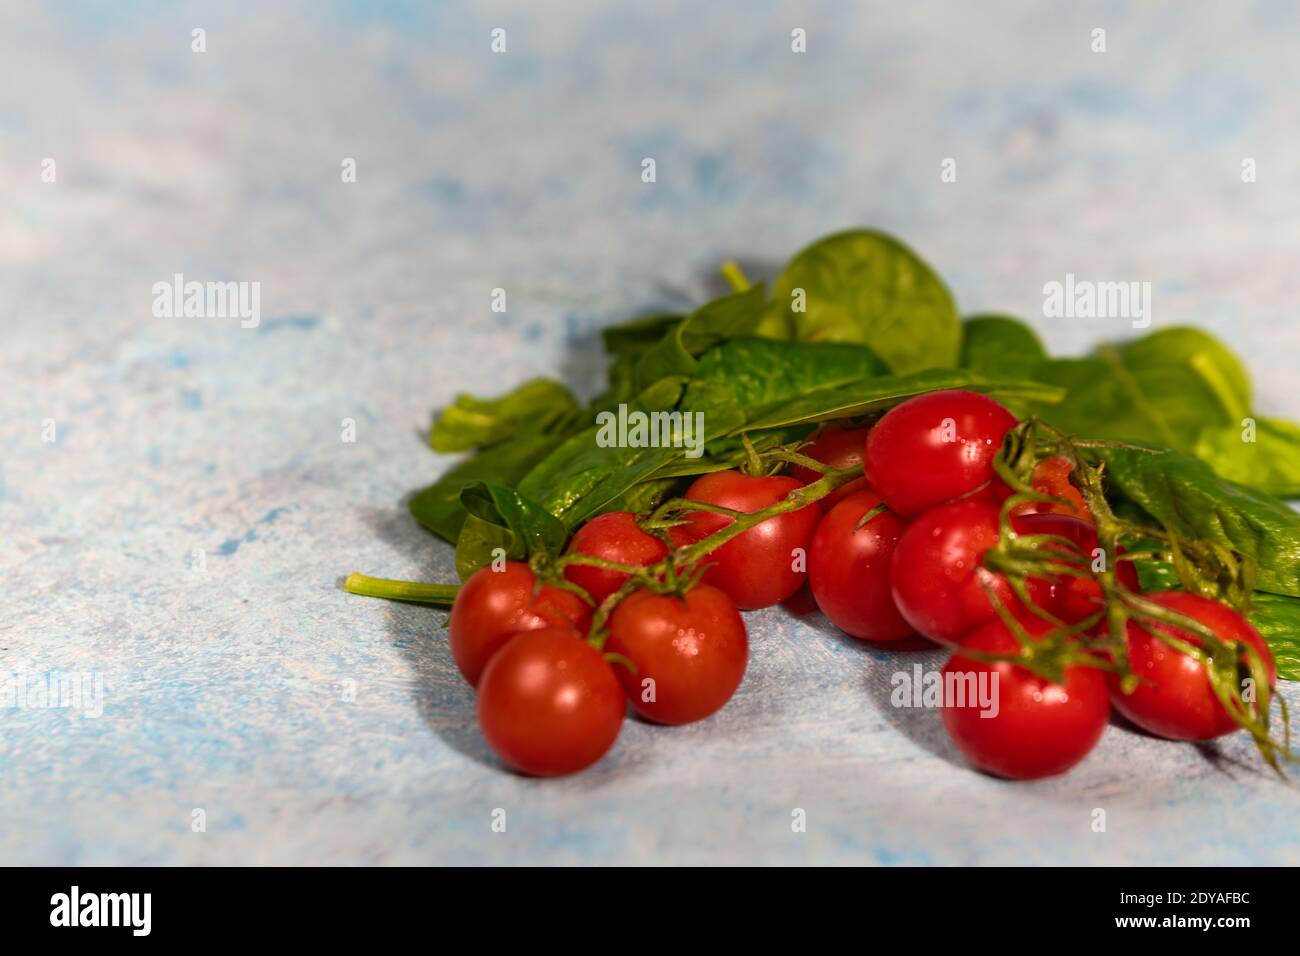 Pomodori d'uva freschi con foglie di spinaci su sfondo bianco dipinto a mano. Vegan vegies dieta alimentare. Erbe, pomodori rossi, concetto di cucina. Foto Stock